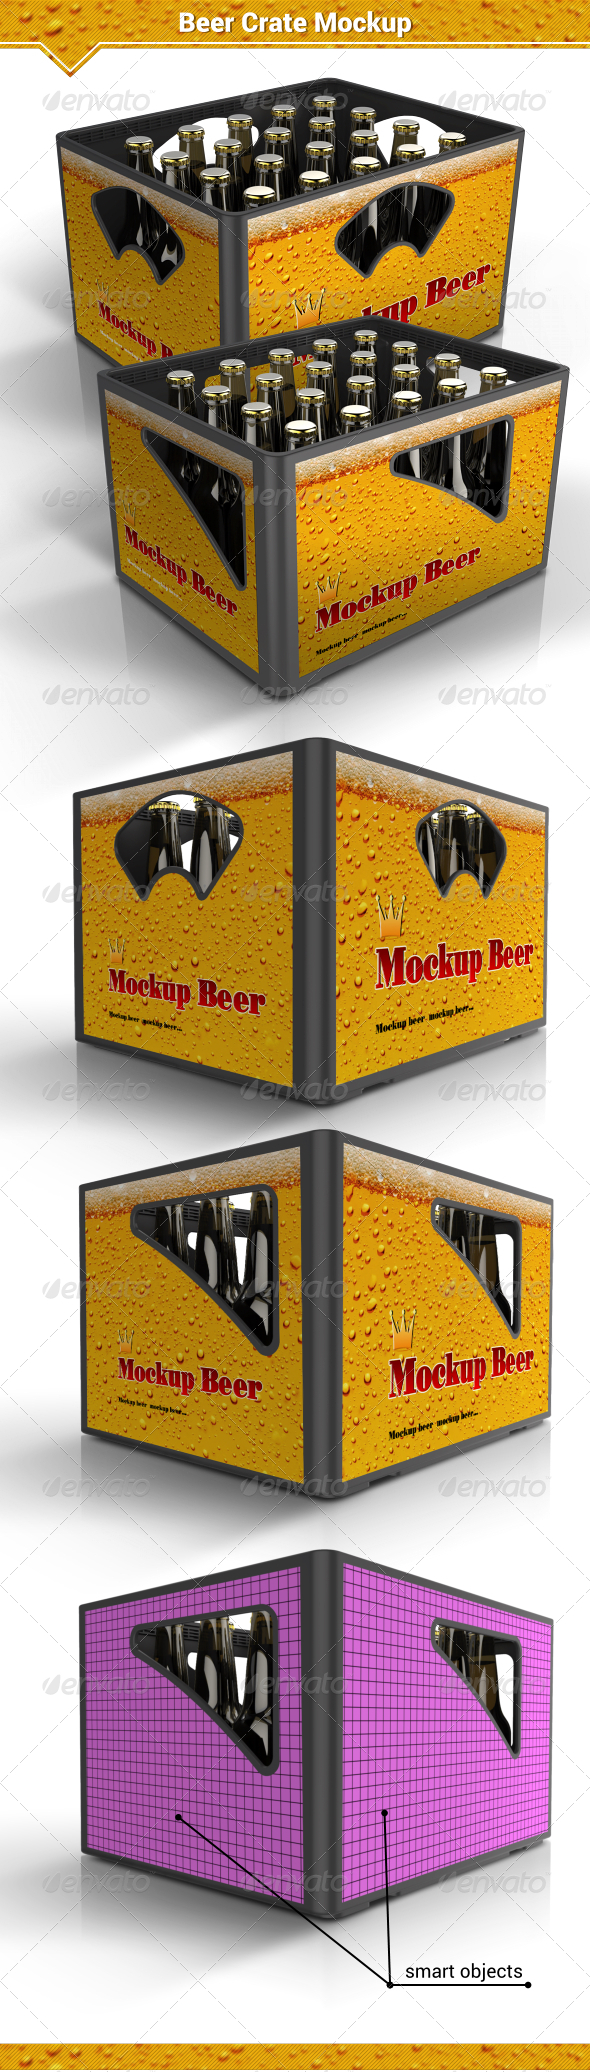 Beer Crate Mockup